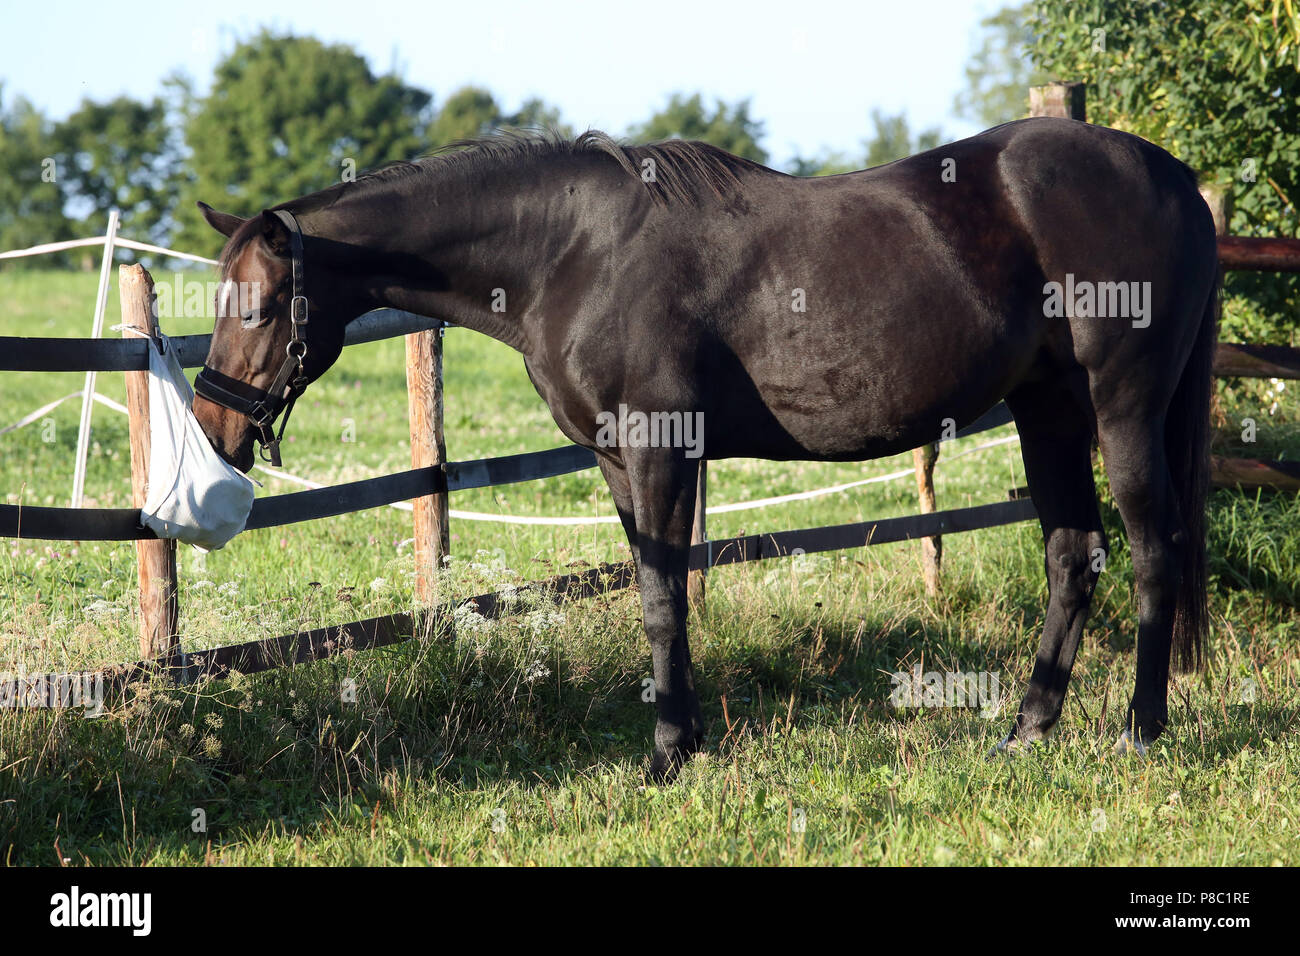 Gestuet Westerberg, caballo huele curiosamente en el pasto en una bolsa de limpieza Foto de stock